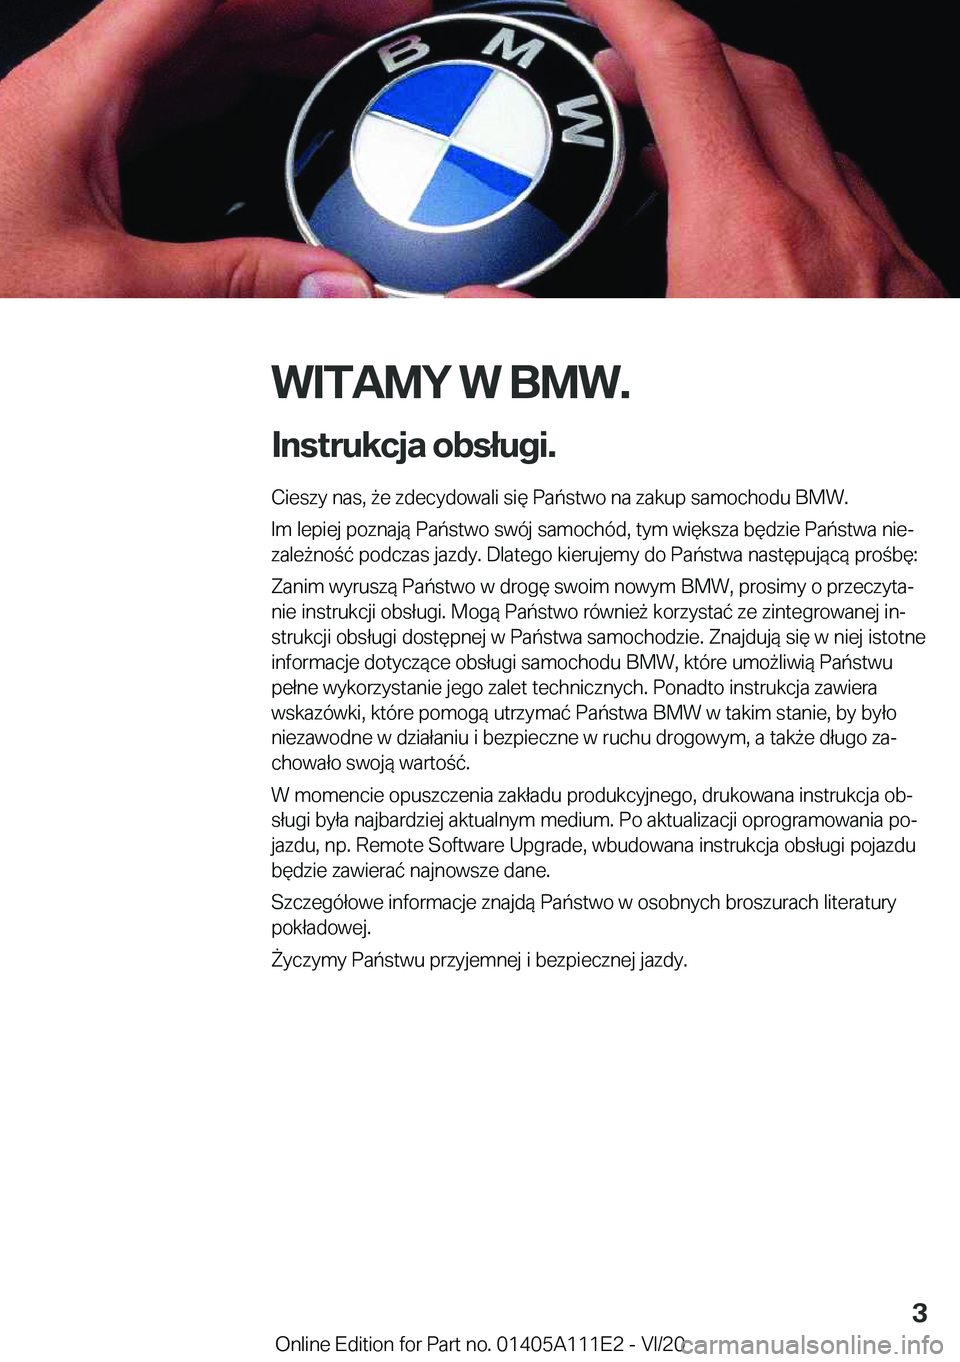 BMW 3 SERIES SEDAN PLUG-IN HYBRID 2021  Instrukcja obsługi (in Polish) �W�I�T�A�M�Y��W��B�M�W�.
�I�n�s�t�r�u�k�c�j�a��o�b�s�ł�u�g�i�. �C�i�e�s�z�y��n�a�s�,�9�e��z�d�e�c�y�d�o�w�a�l�i��s�i�